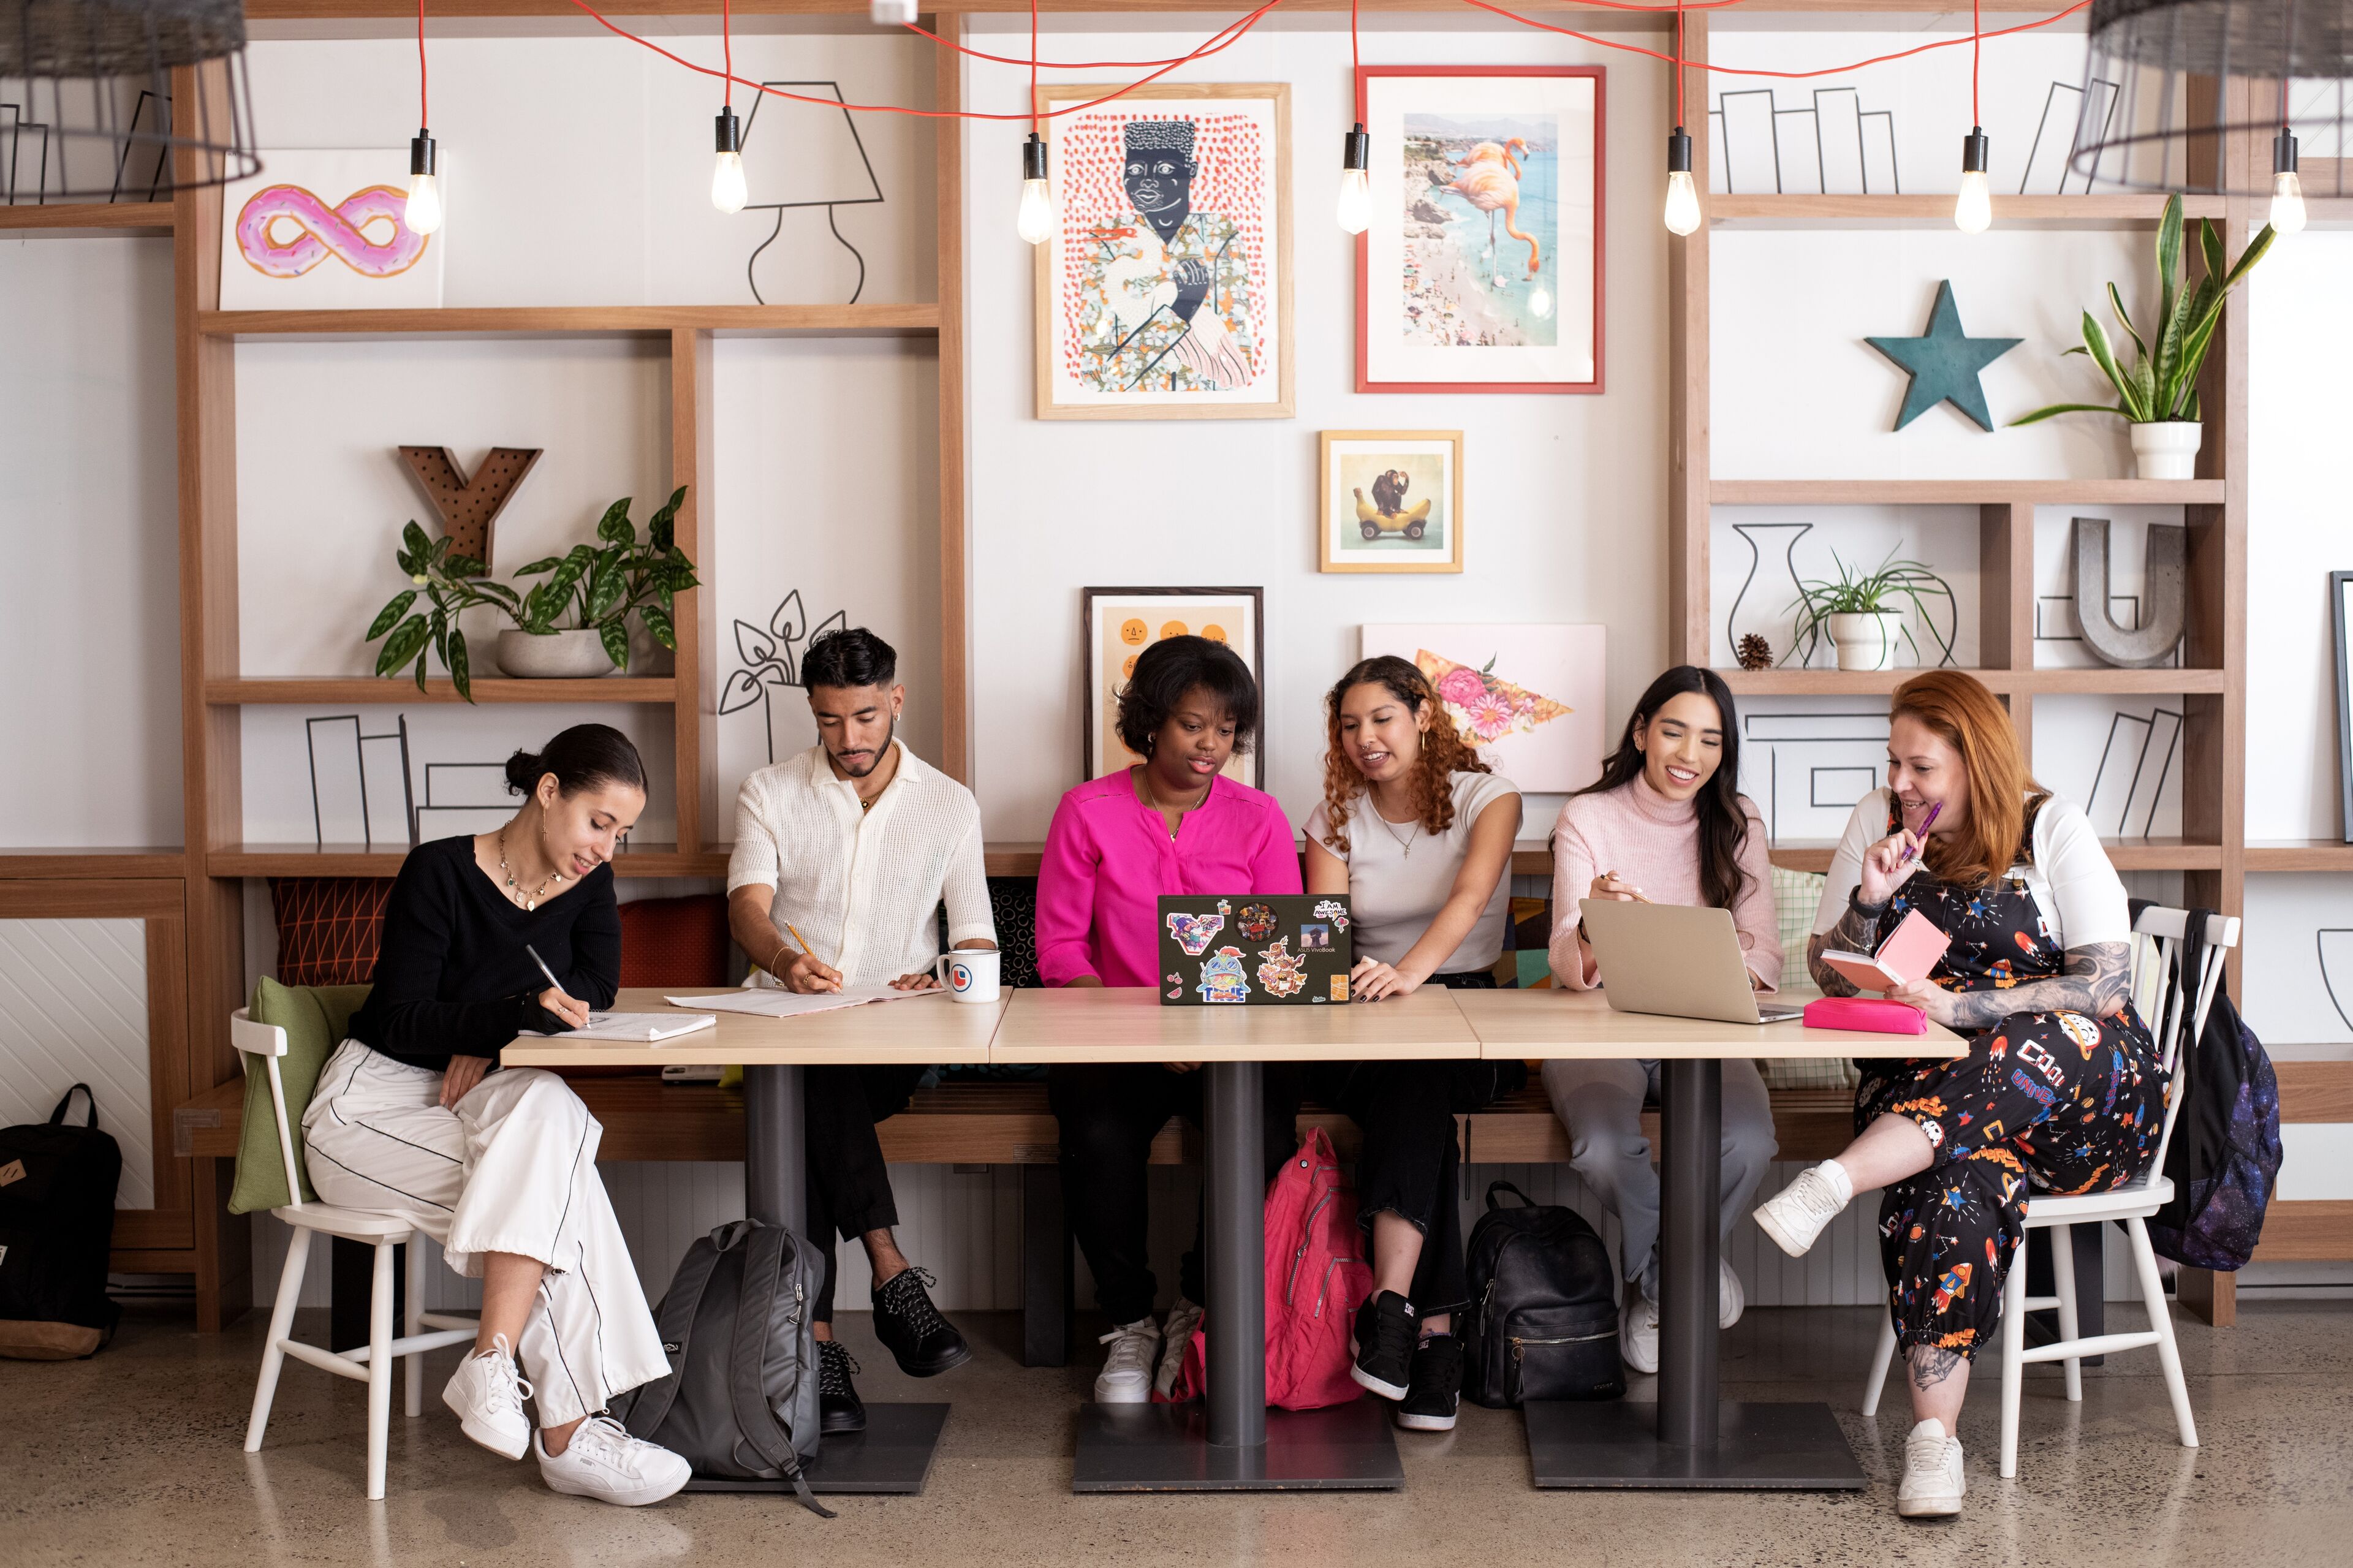 Un groupe diversifié de personnes concentrées travaillant de manière créative dans un espace de travail partagé moderne.